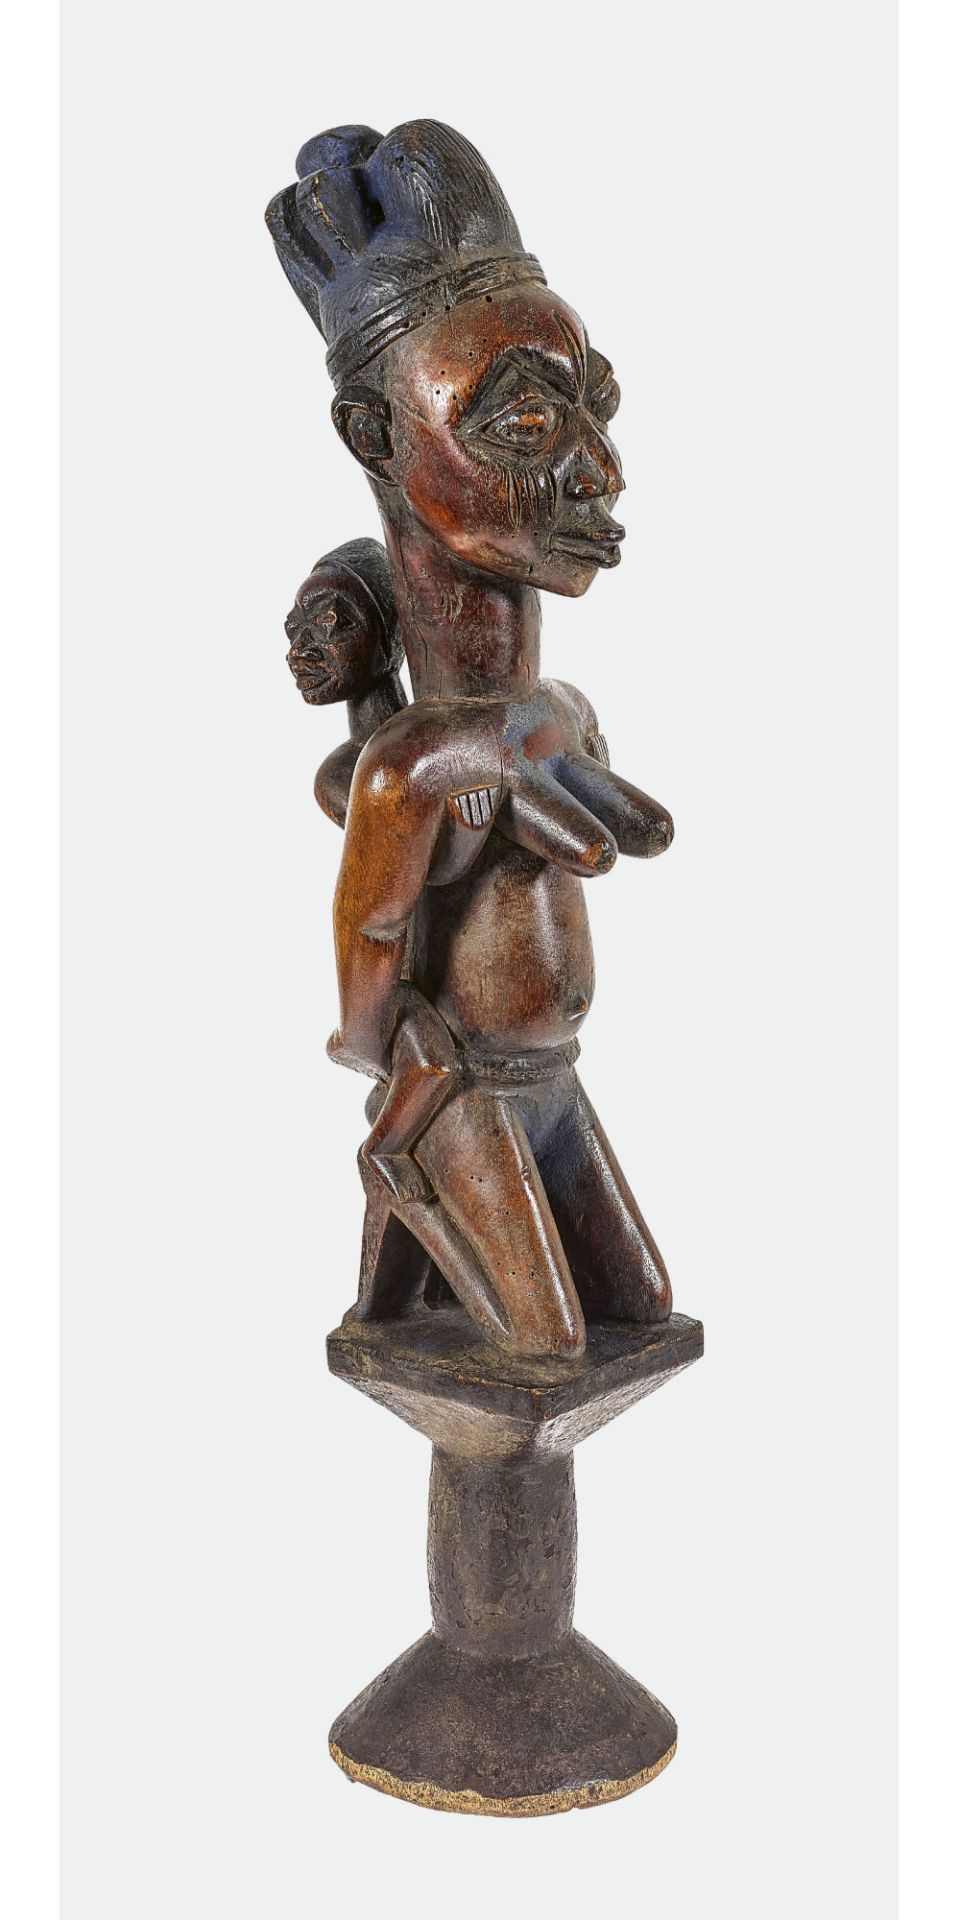 NIGERIA: Maternité, Yoruba, um 1920-1930.